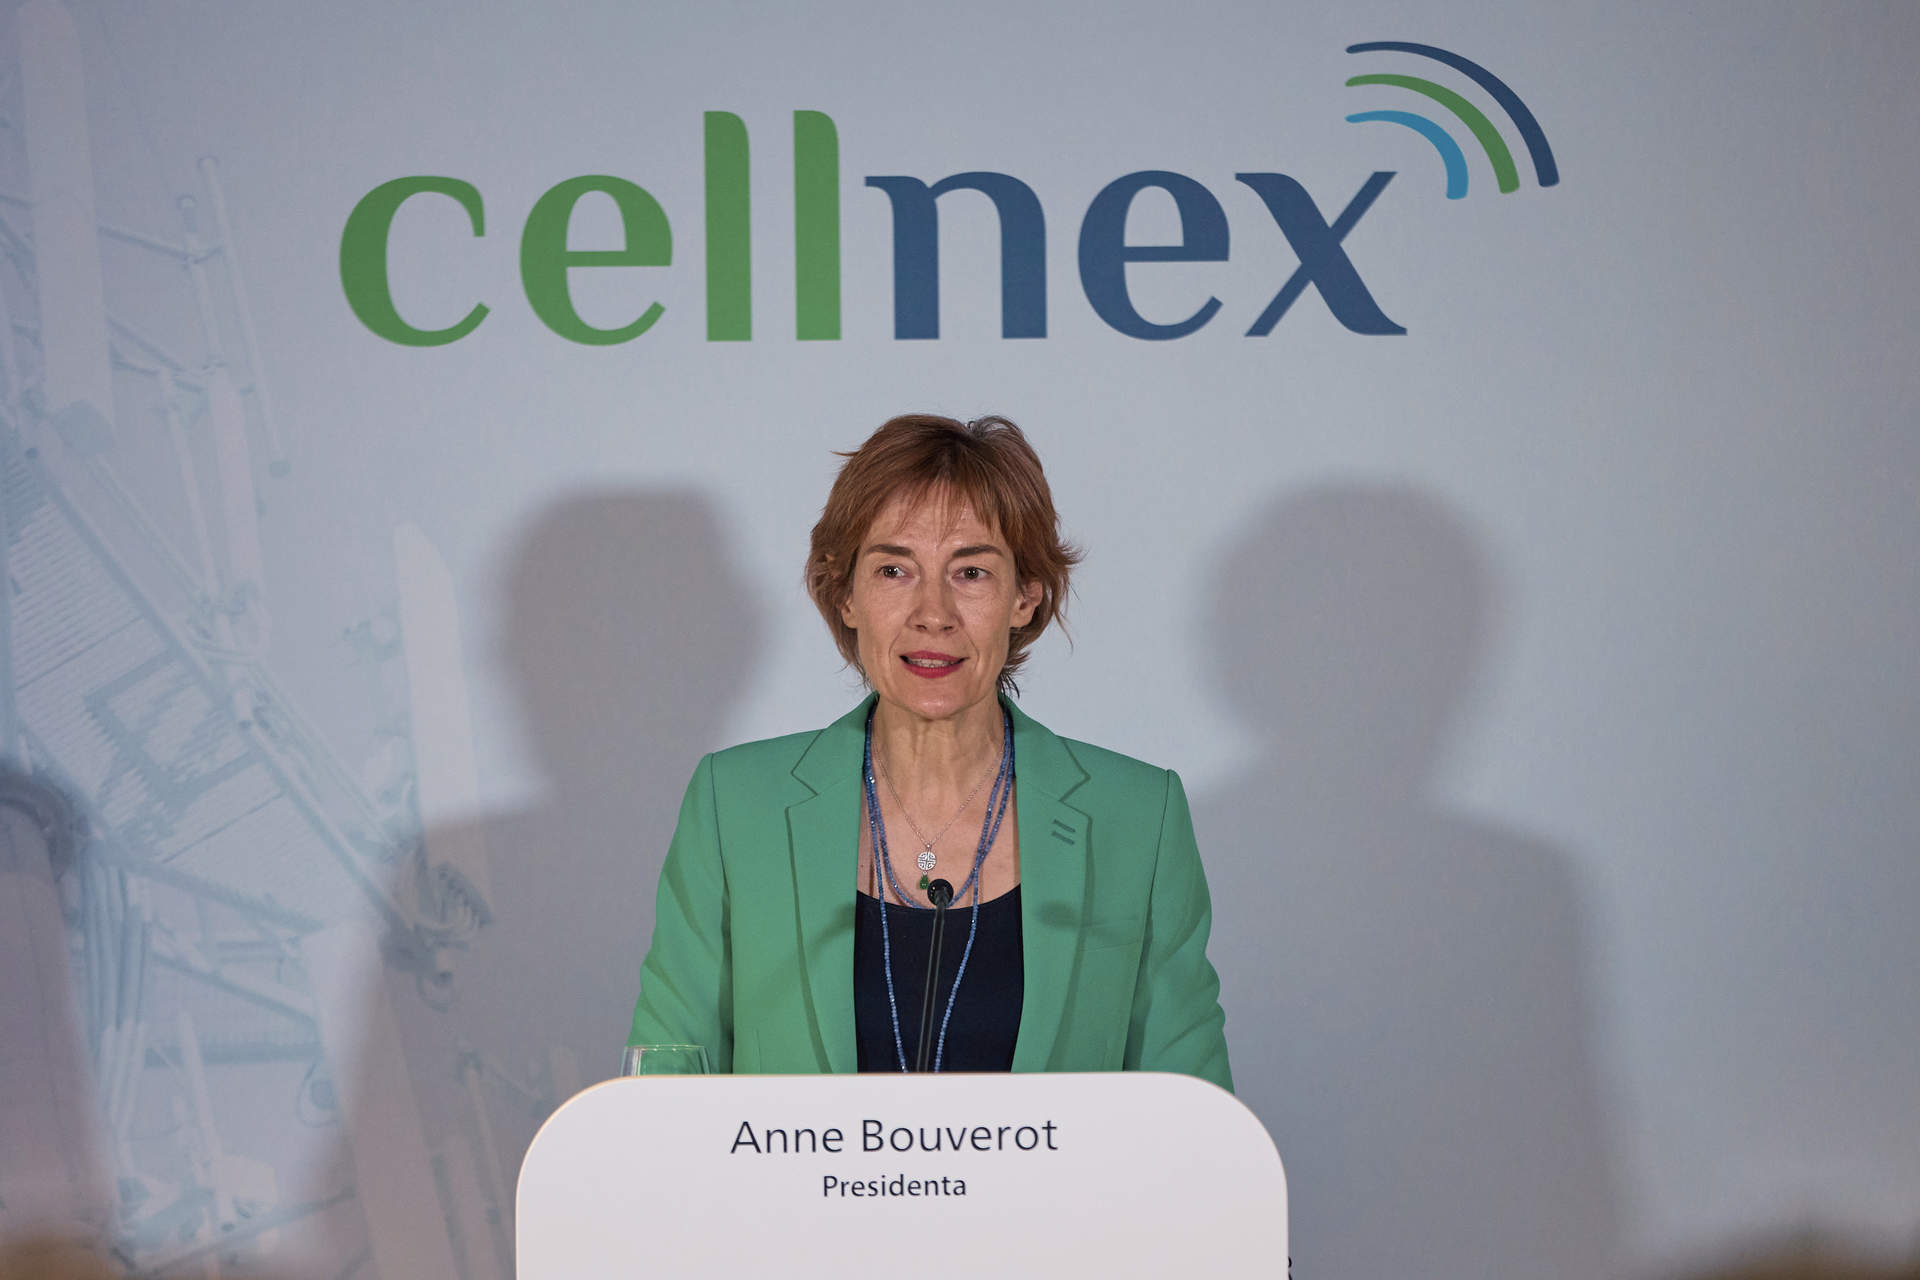 La presidenta de Cellnex invierte casi 100.000 euros en la compra de acciones de la compañía